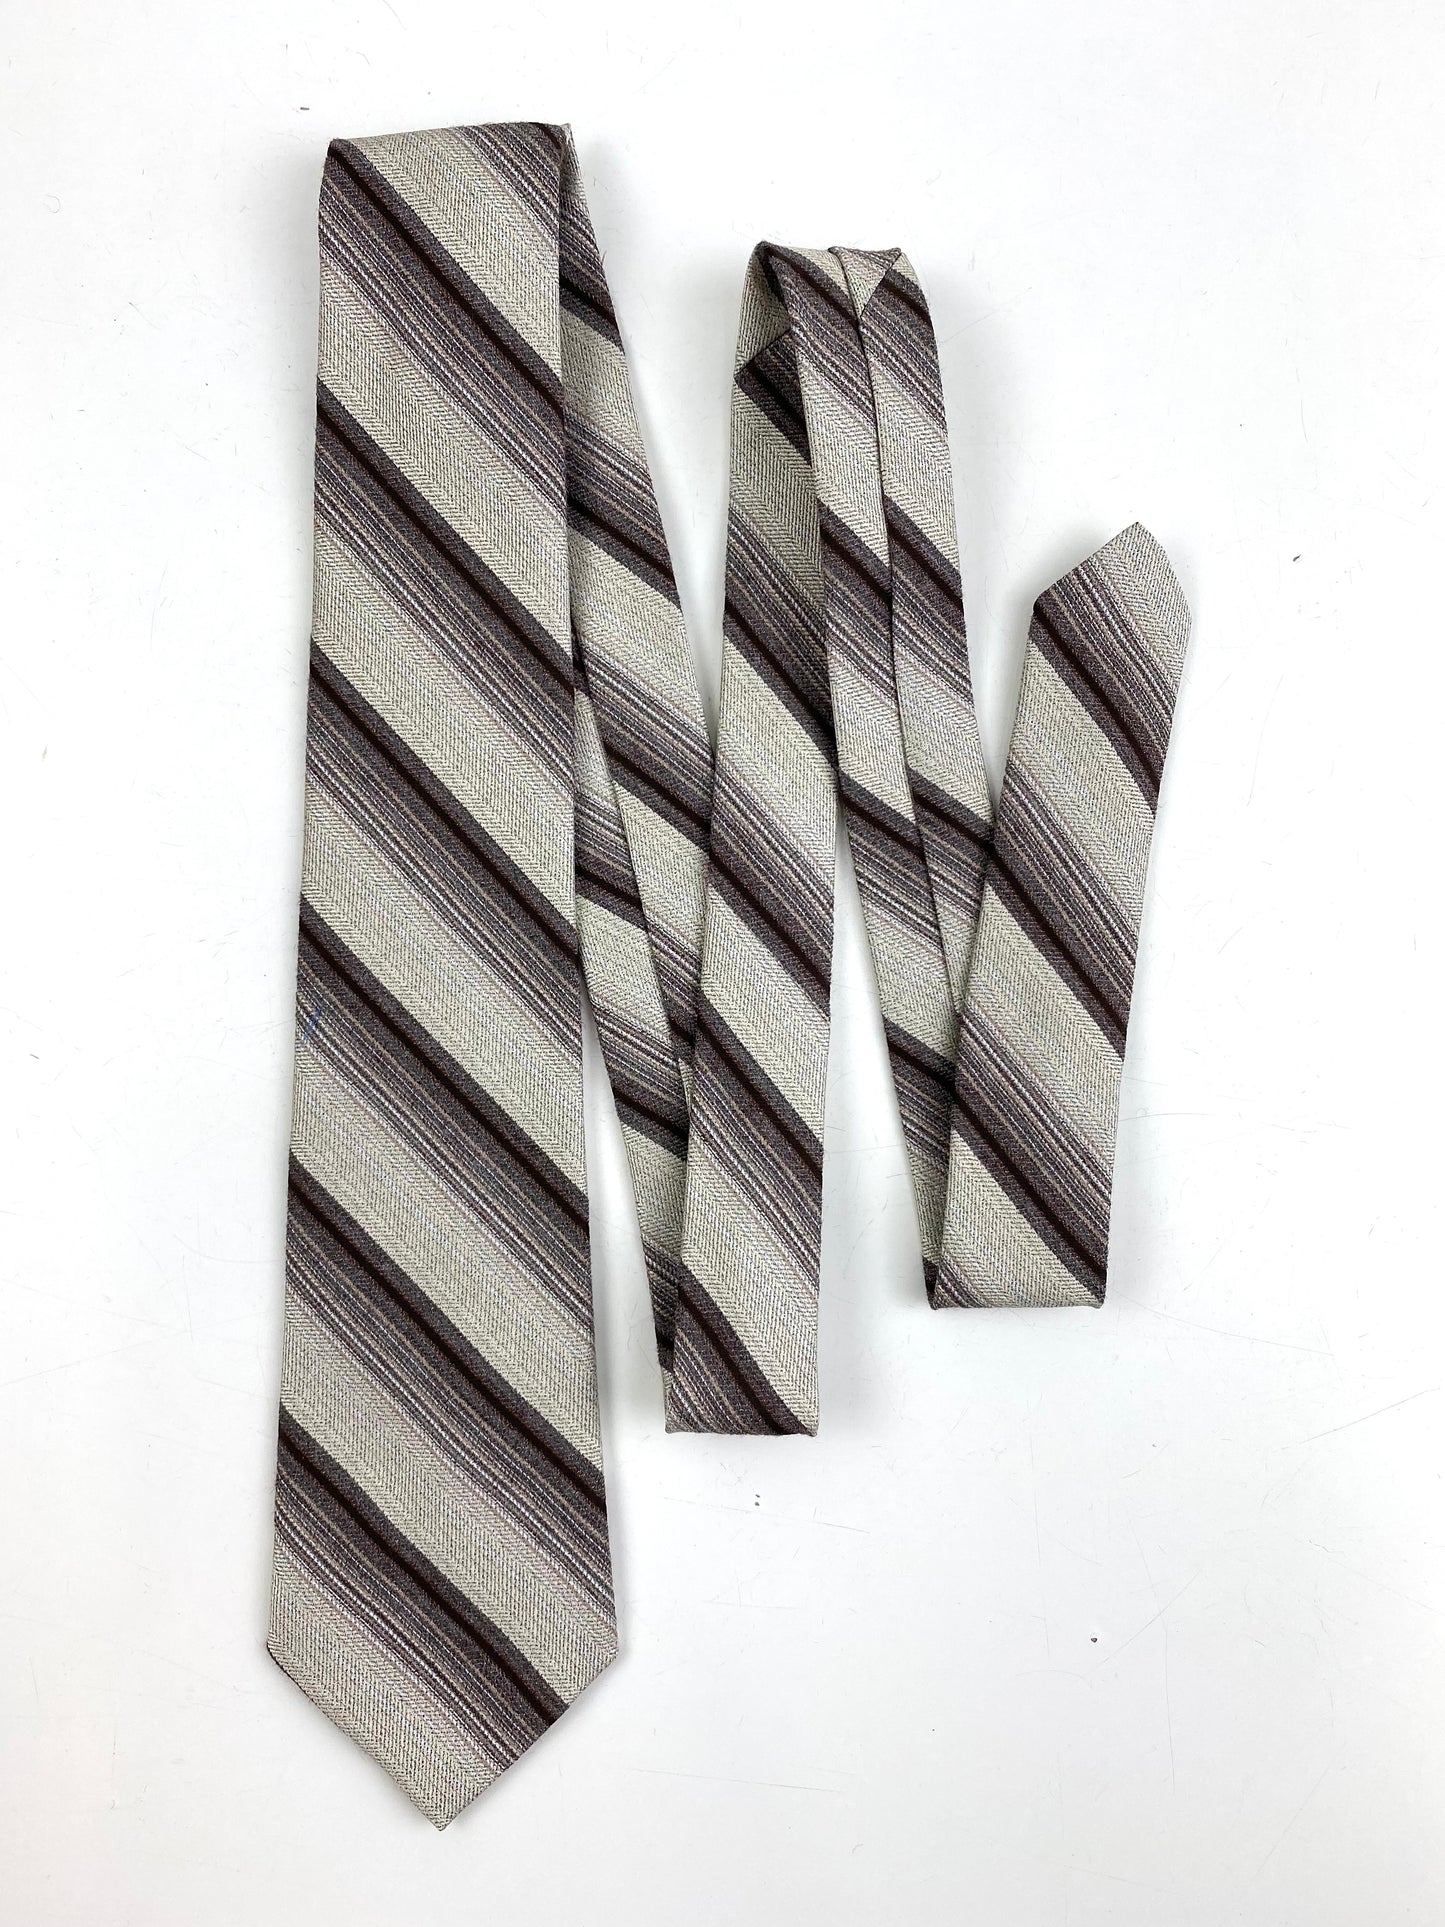 Front of: 80s Deadstock Necktie, Men's Vintage Brown/ Beige Diagonal Stripe Tie, NOS